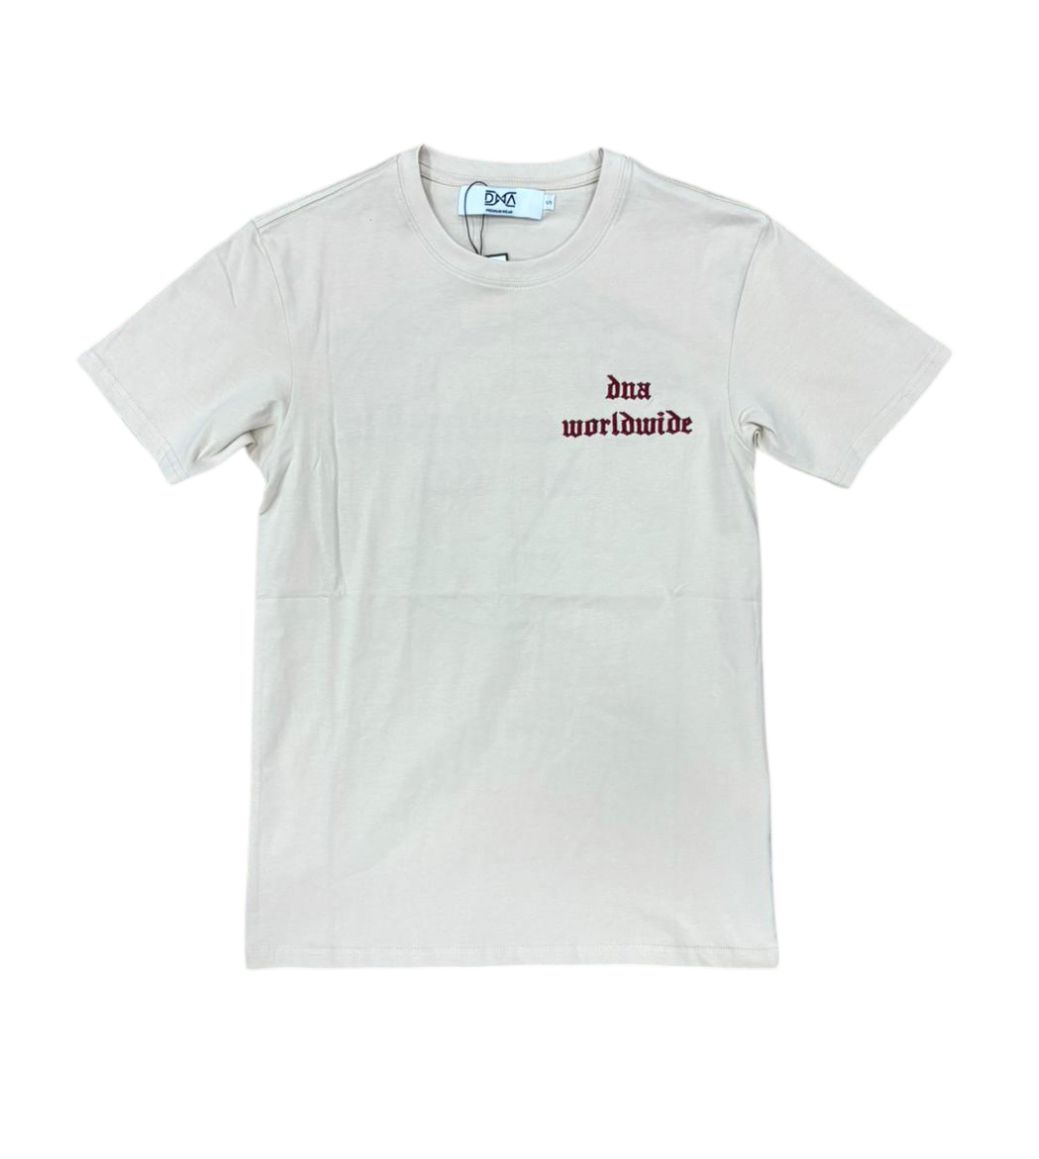 DNA Worldwide T-Shirt - Beige/Burgundy